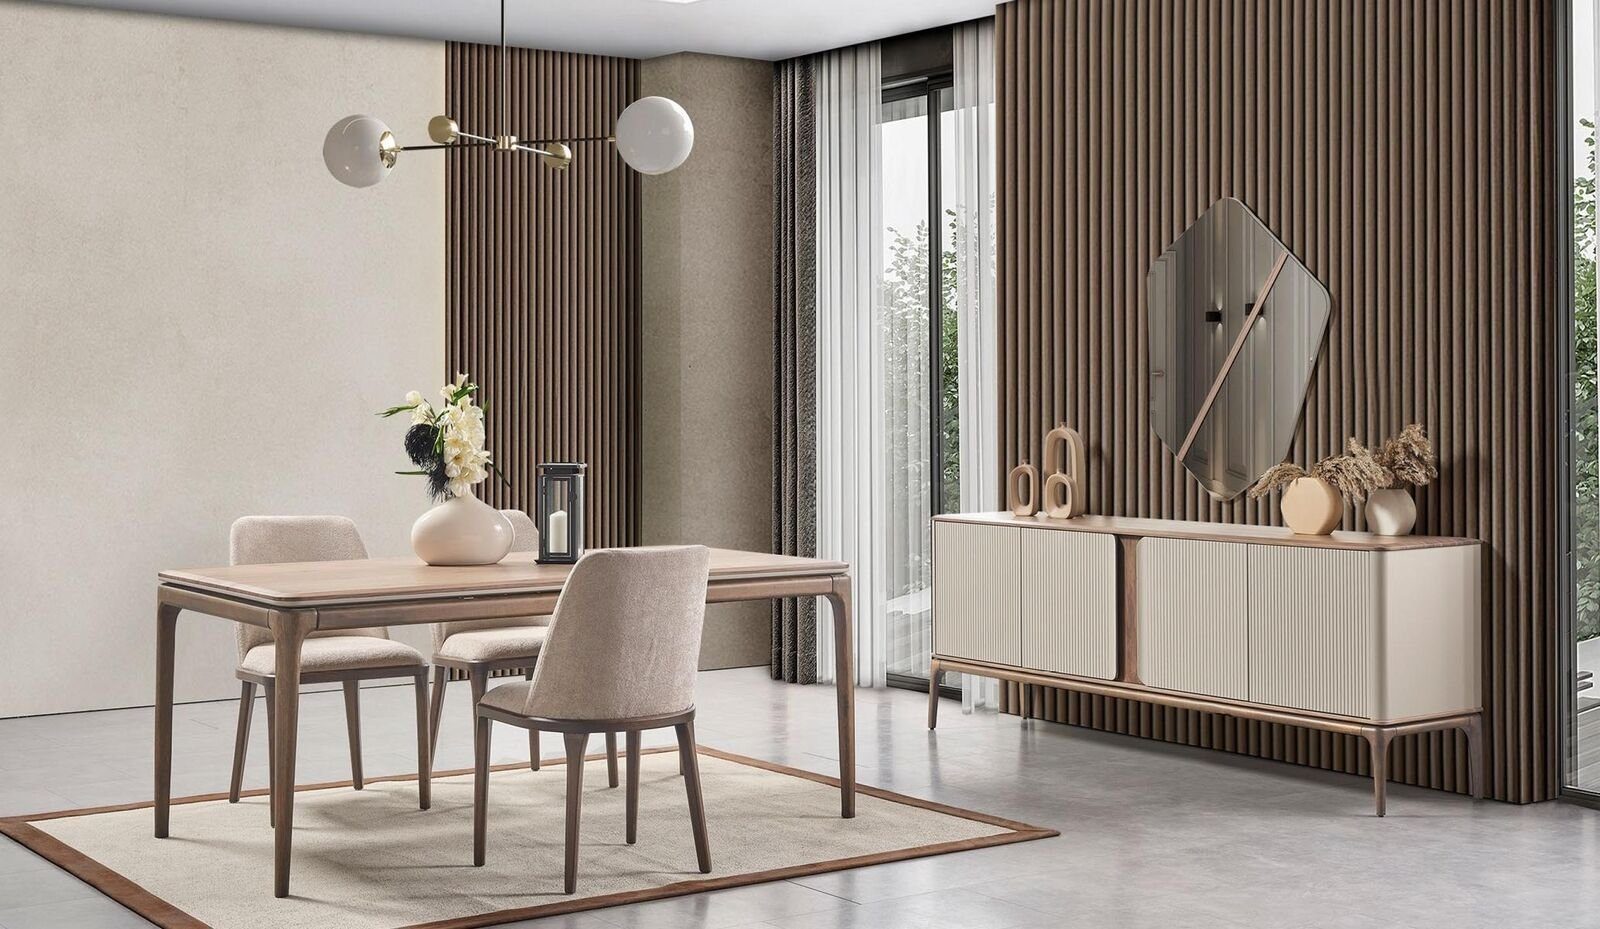 JVmoebel Stuhl Luxus Design Sitz Echtholz Neu Textil Stühle Holz Polster Esszimmer